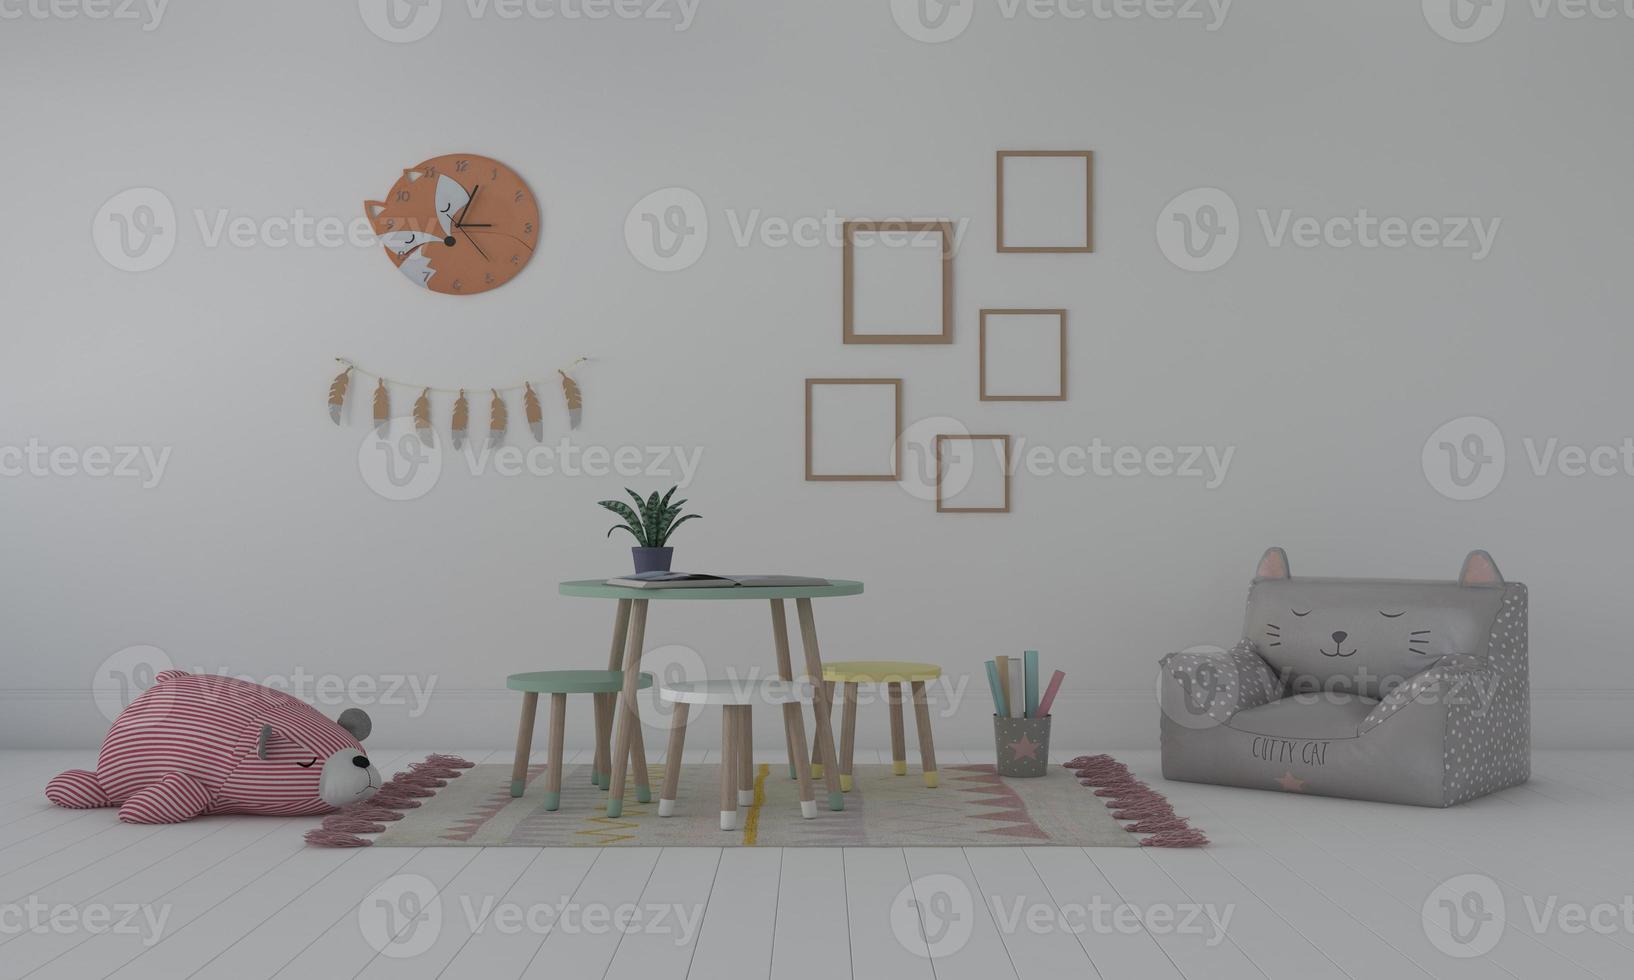 chambre d'enfants, maison de jeu, meubles pour enfants avec maquette de jouet et de cadre photo